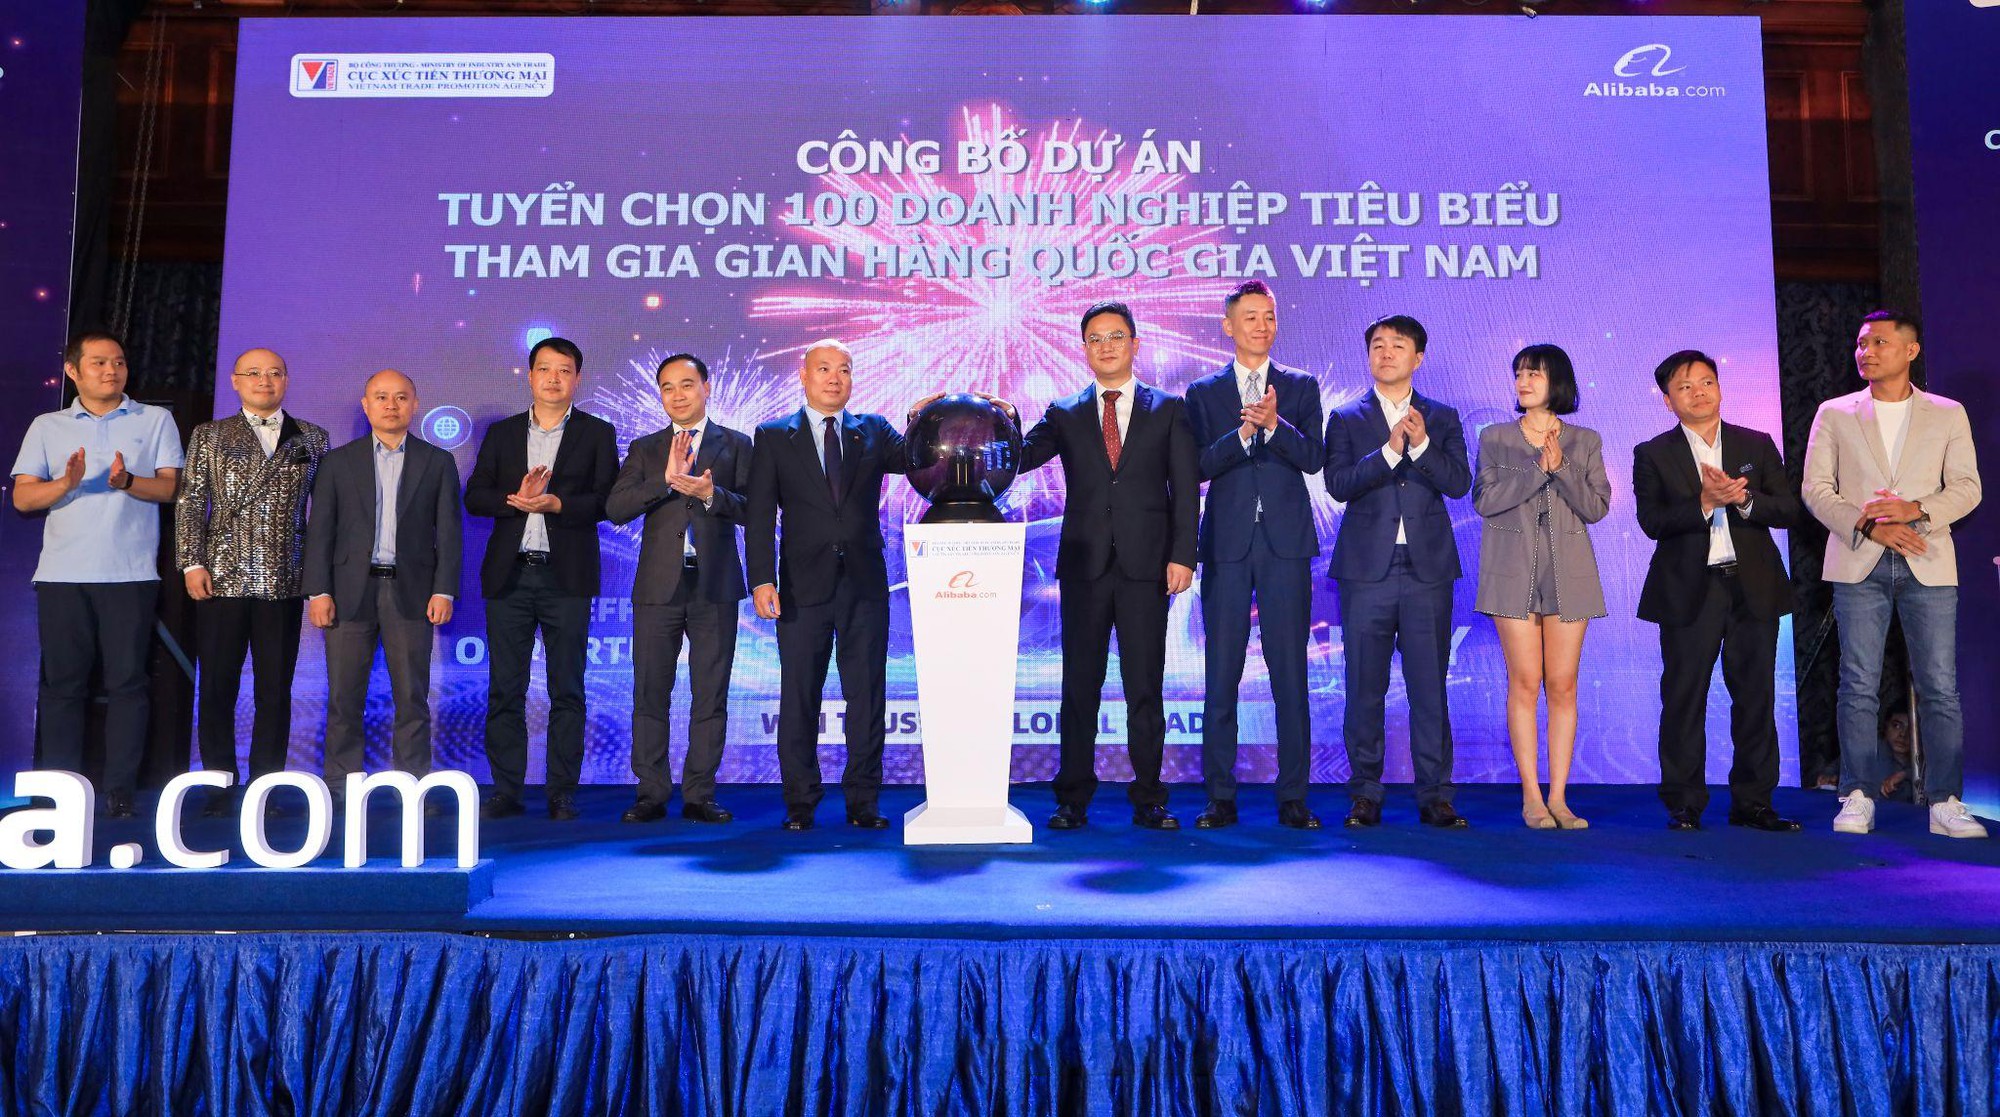 Khởi động chương trình tuyển chọn 100 doanh nghiệp tiêu biểu tham gia Gian hàng Quốc gia Việt Nam - Ảnh 1.